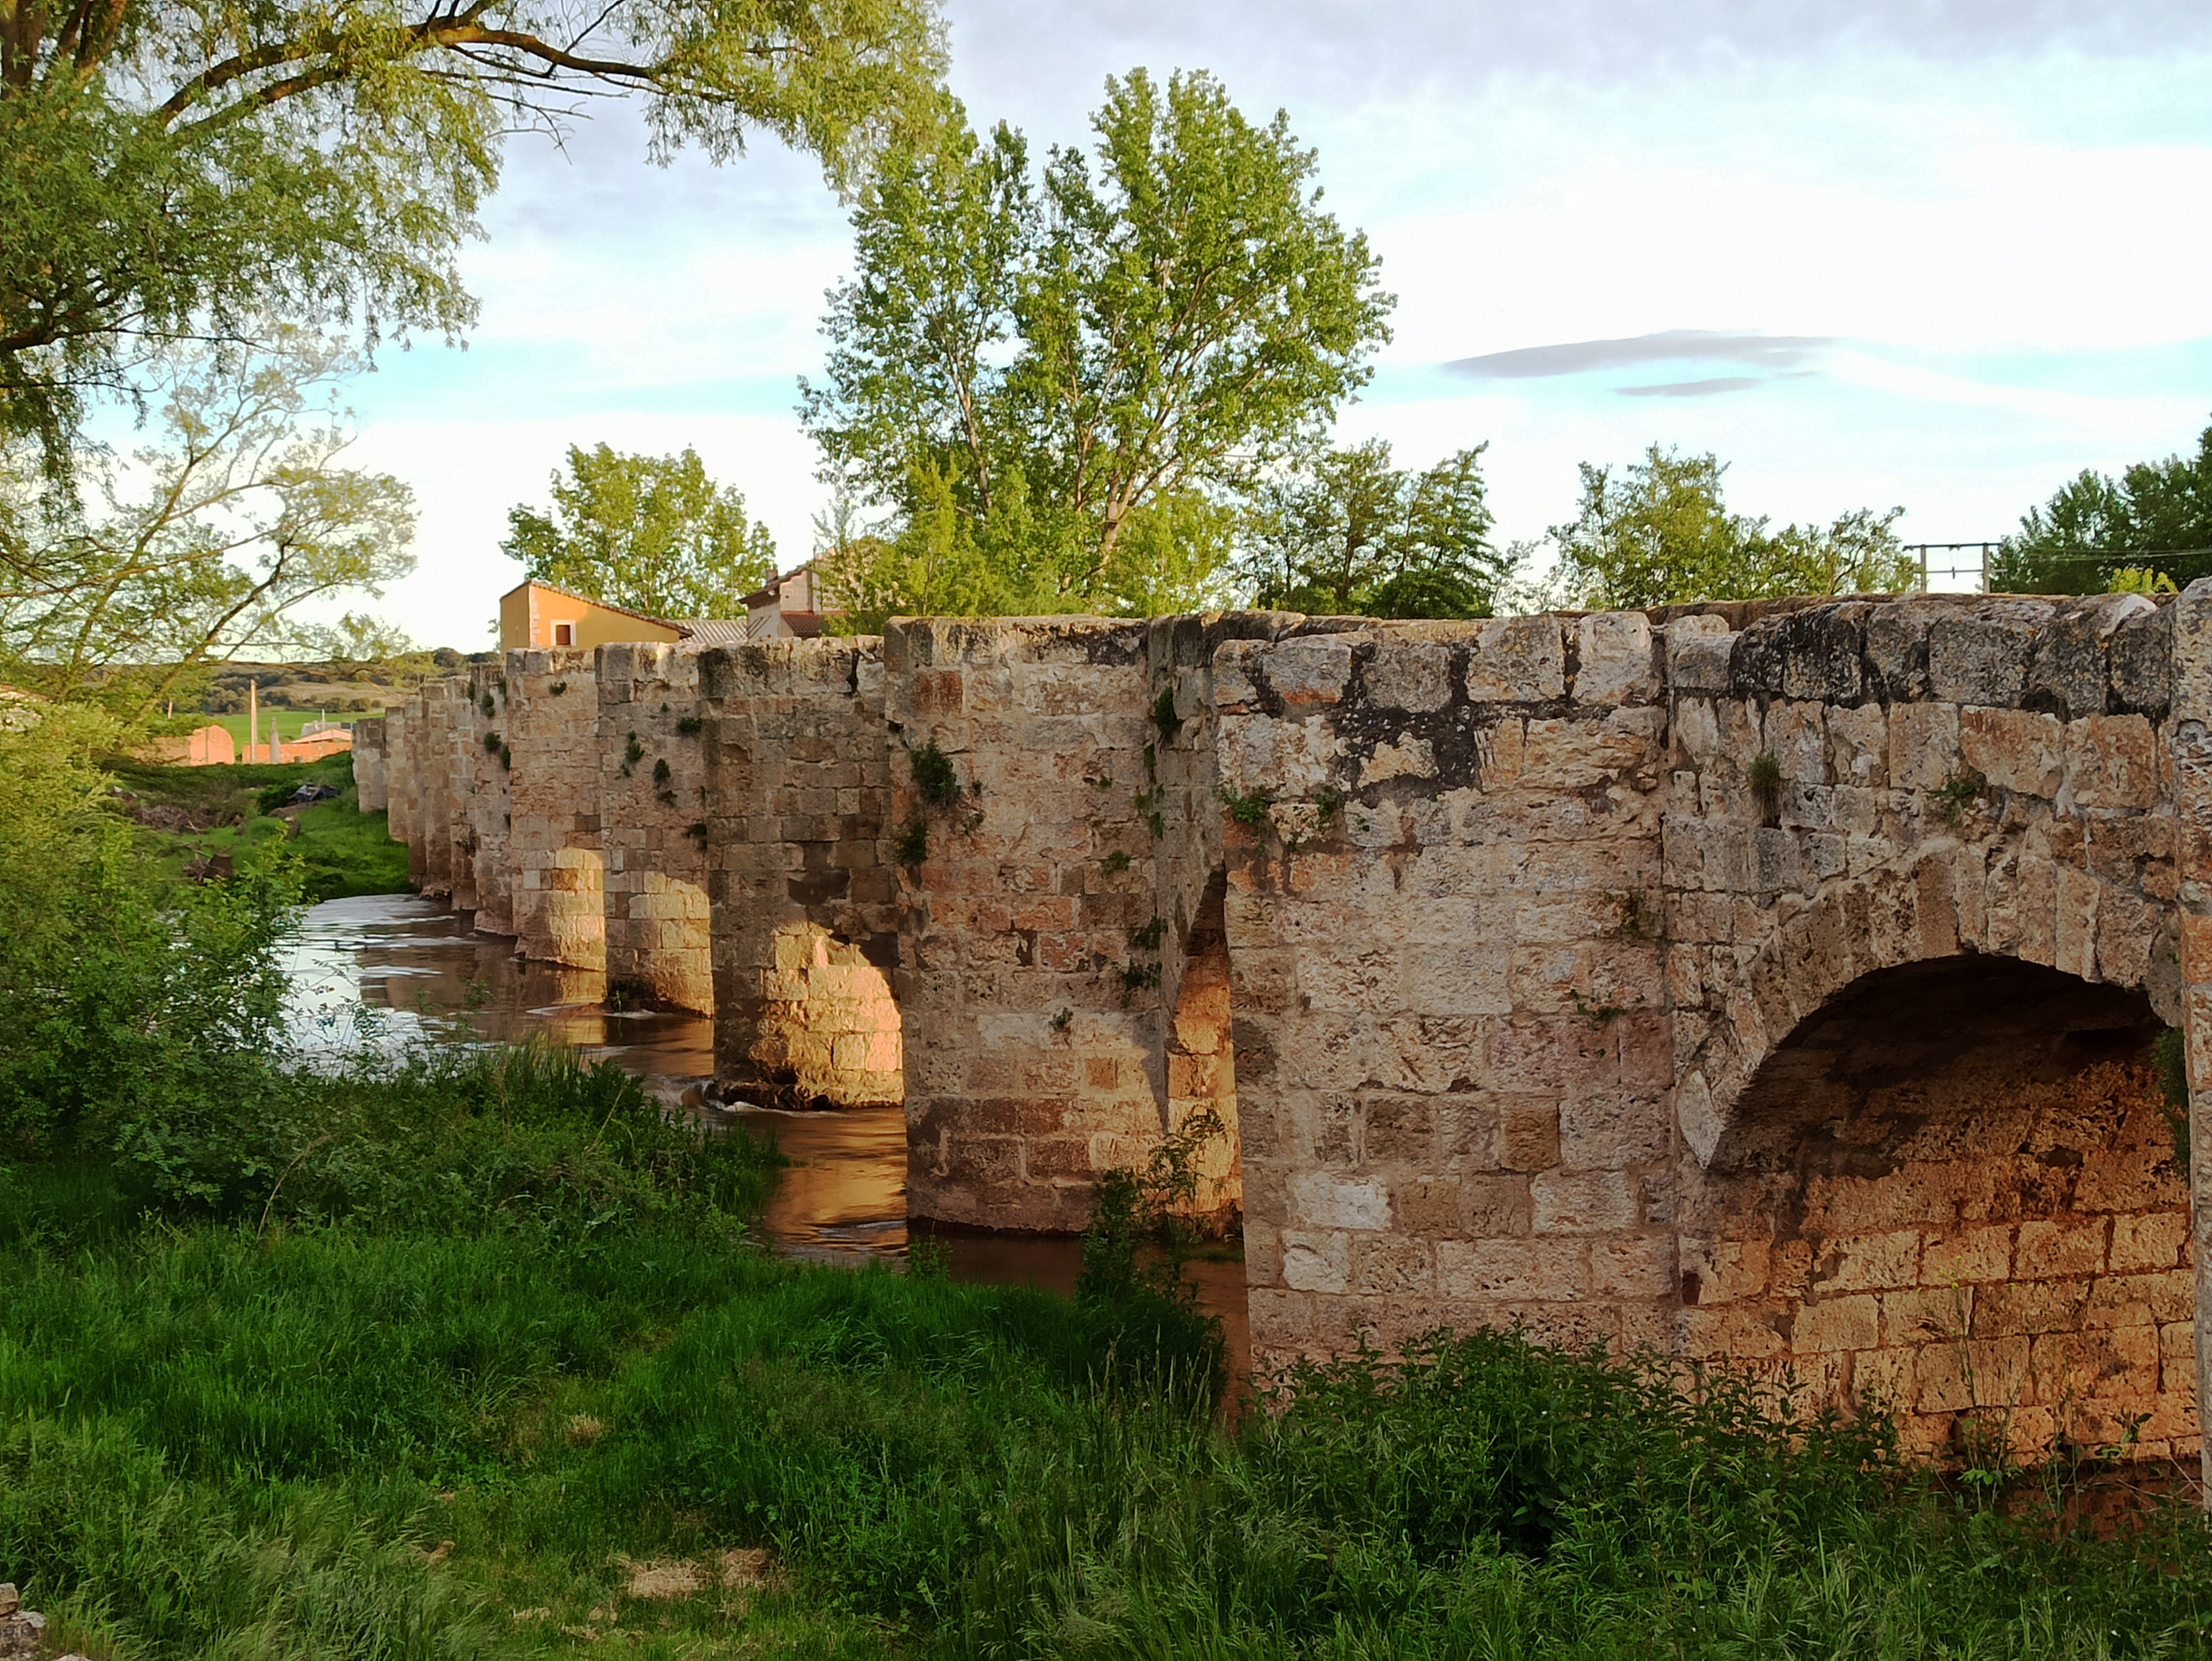 Atardecer en el puente romano